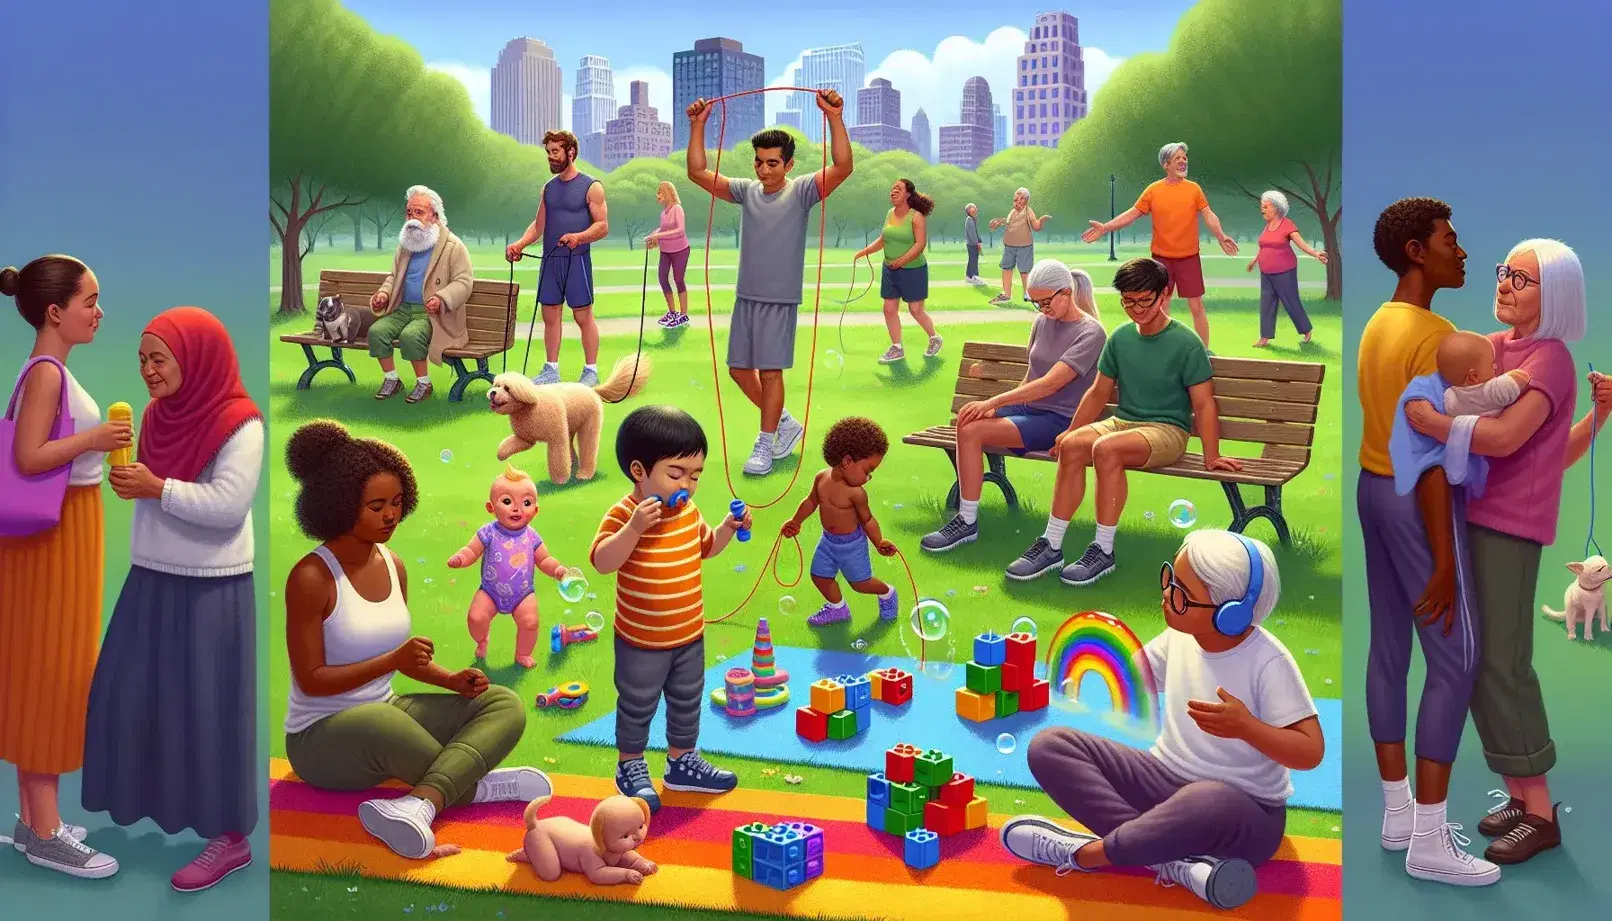 Grupo diverso de personas disfrutando de actividades al aire libre en un parque soleado, con un bebé jugando, un niño haciendo burbujas y más.